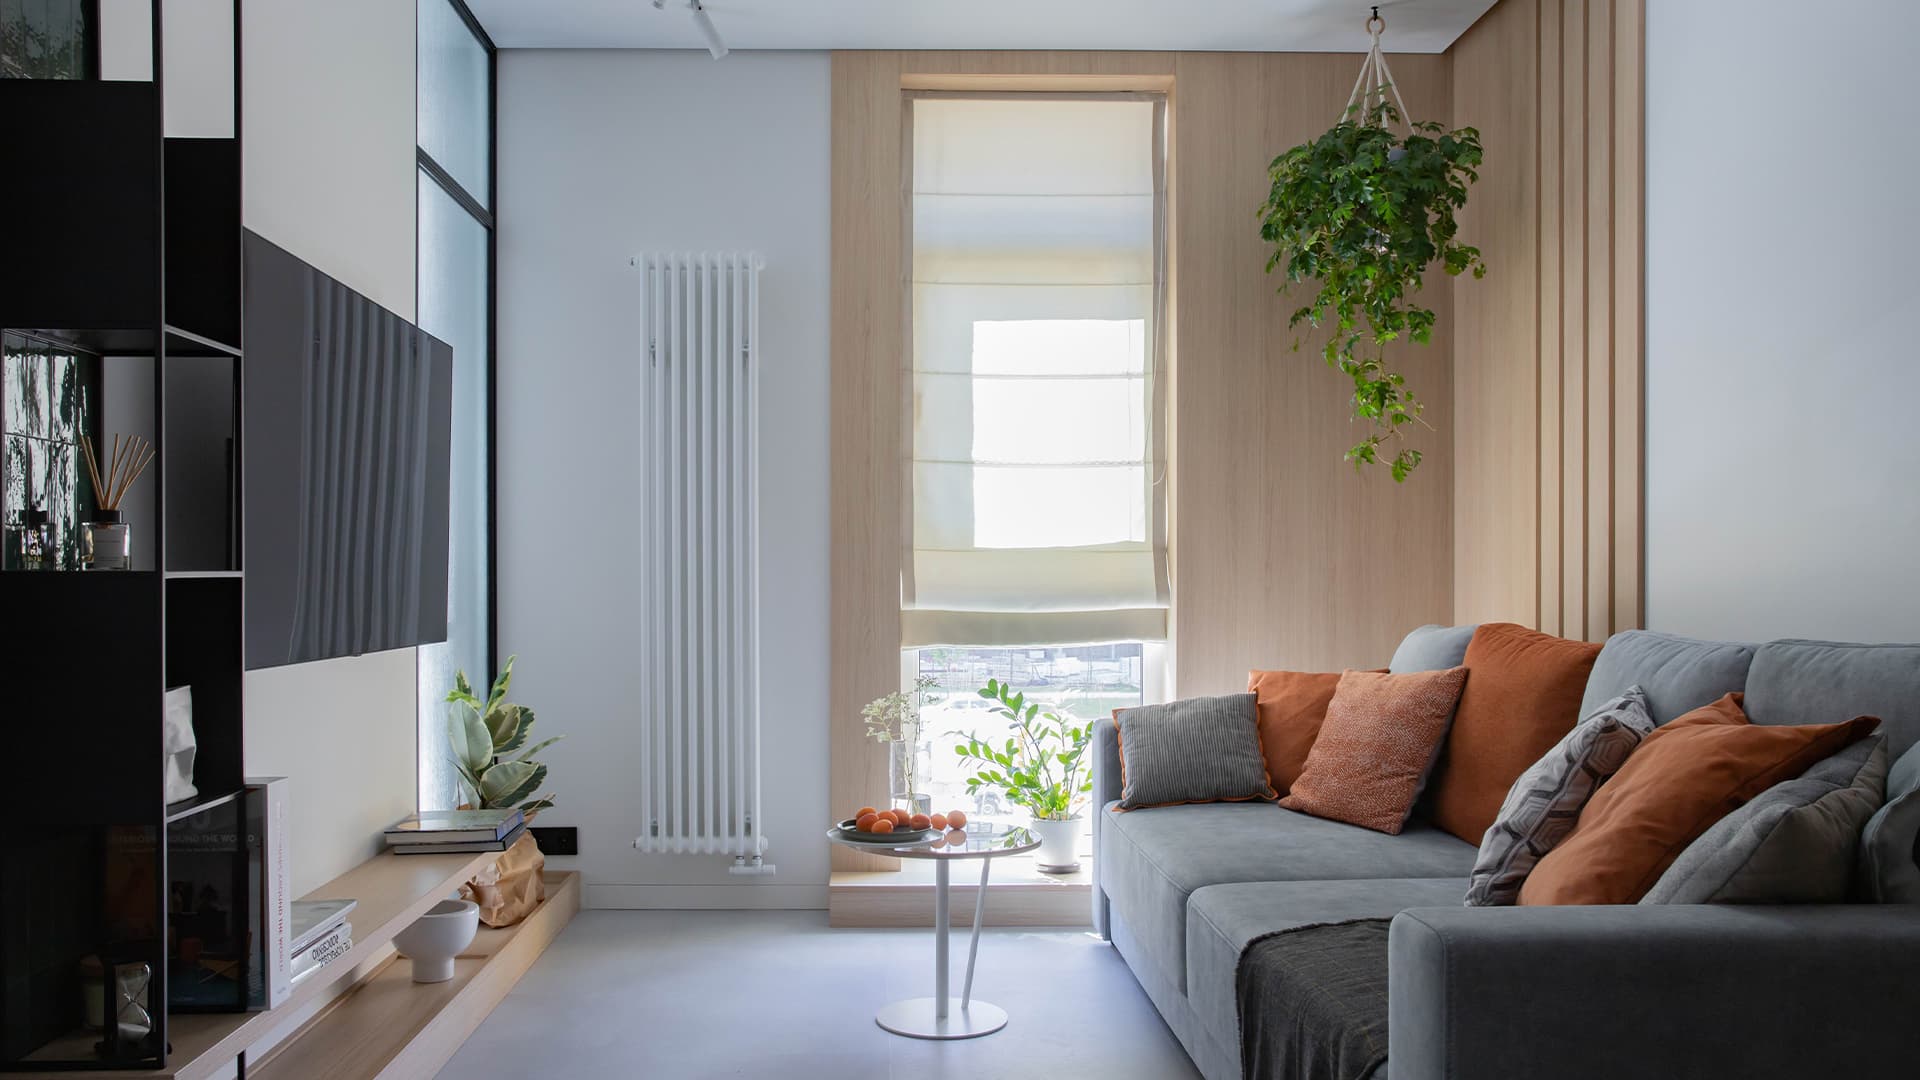 Природные акценты и деревянные рейки в интерьере семейной квартиры – проект Алены Жаворонковой